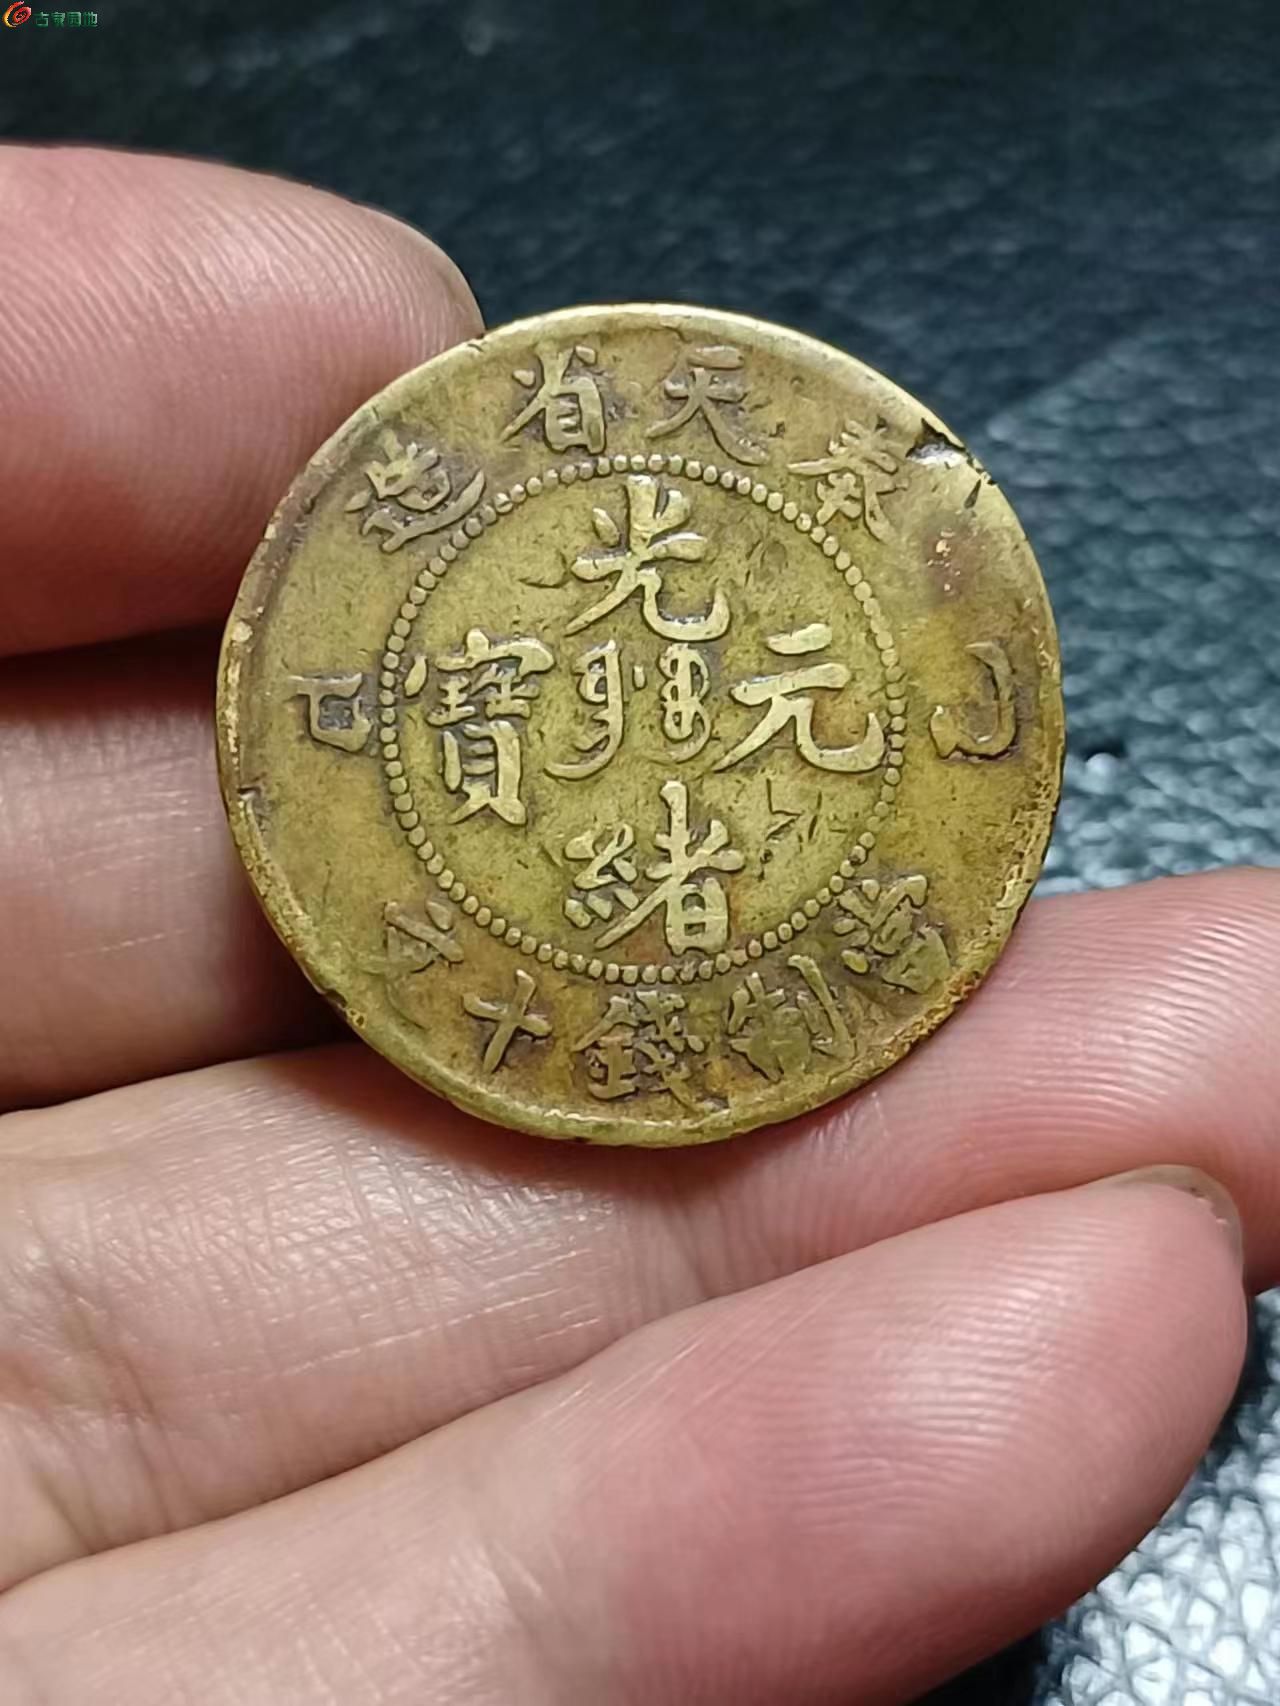 中国古銭『光緒元宝』(江蘇省造 毎元當制銭二十文)大型銅貨